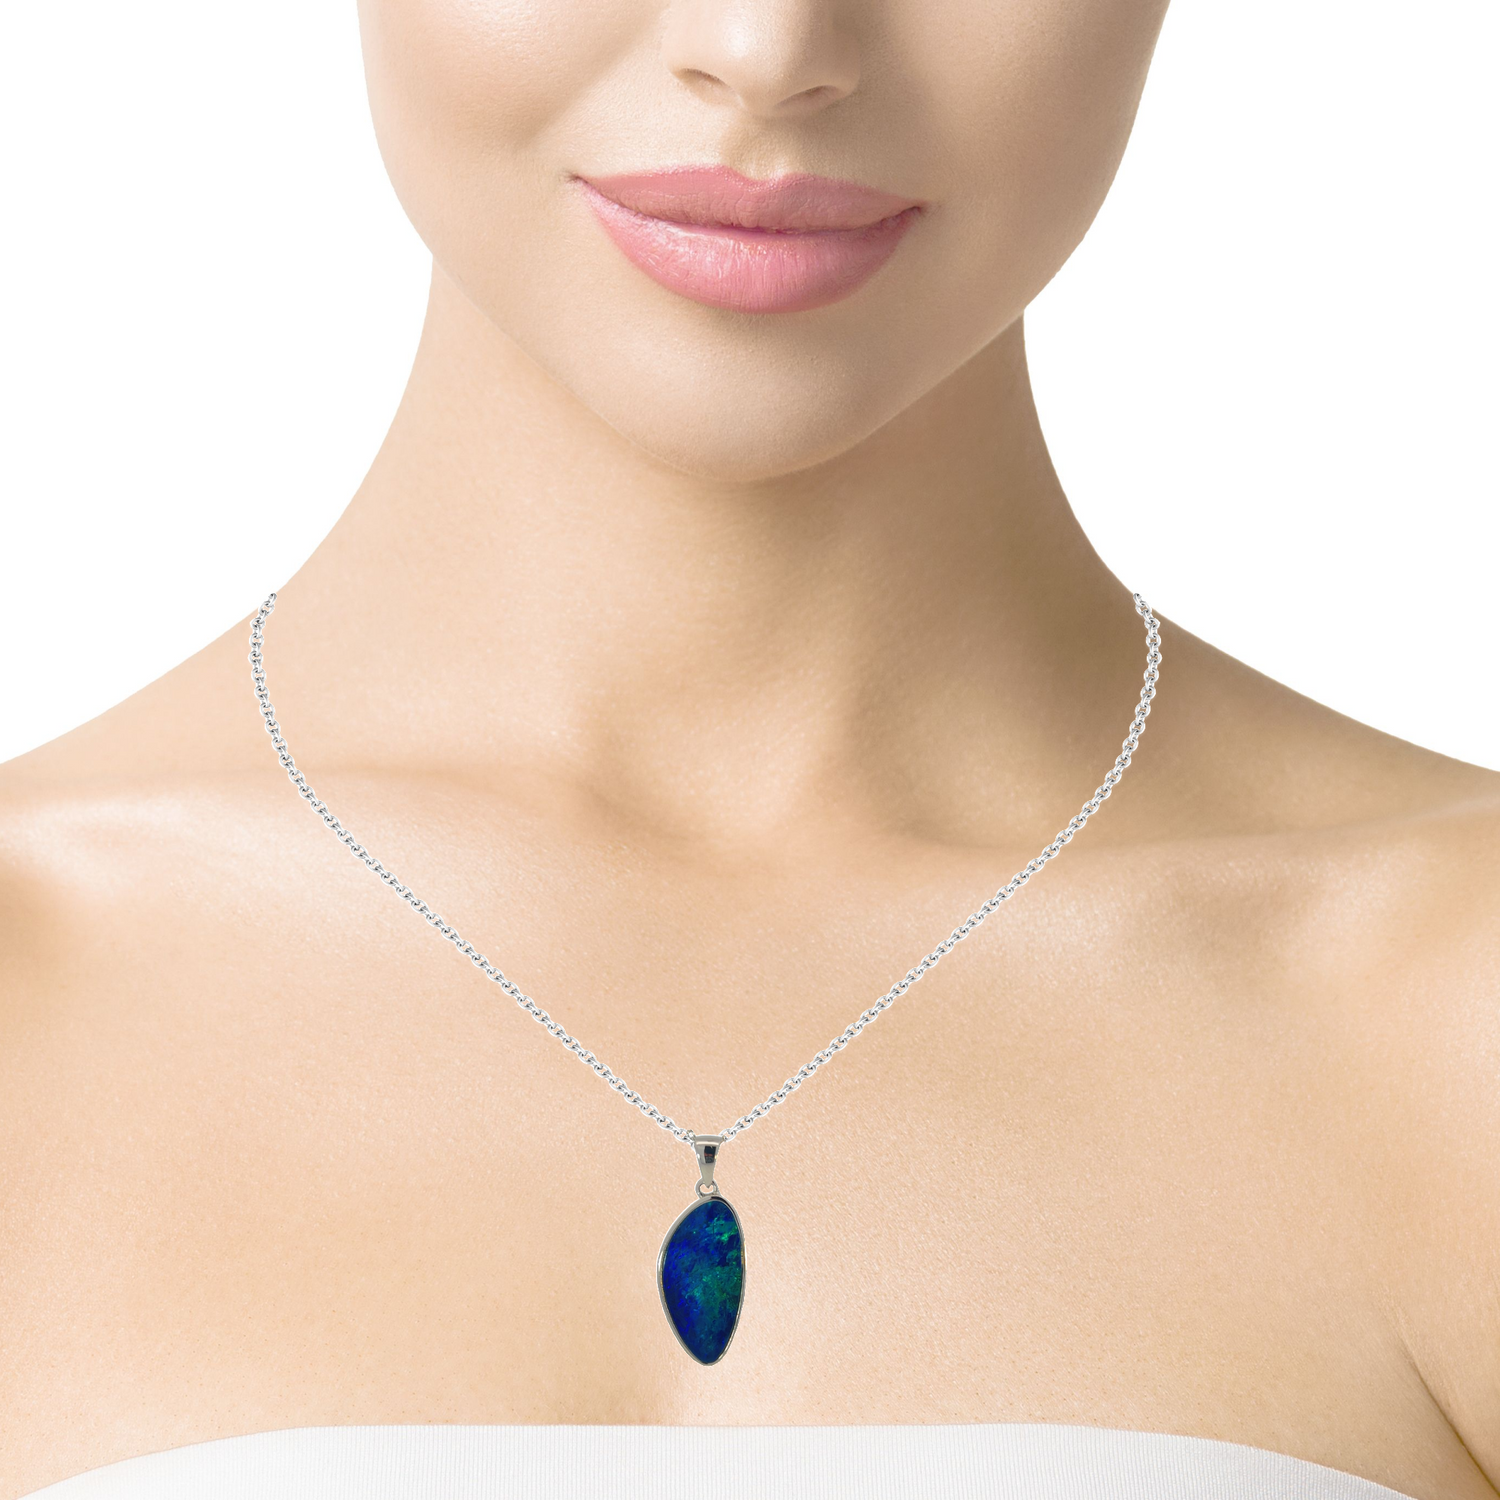 Sterling Silver Blue Opal doublet 23x11mm pendant - Masterpiece Jewellery Opal & Gems Sydney Australia | Online Shop